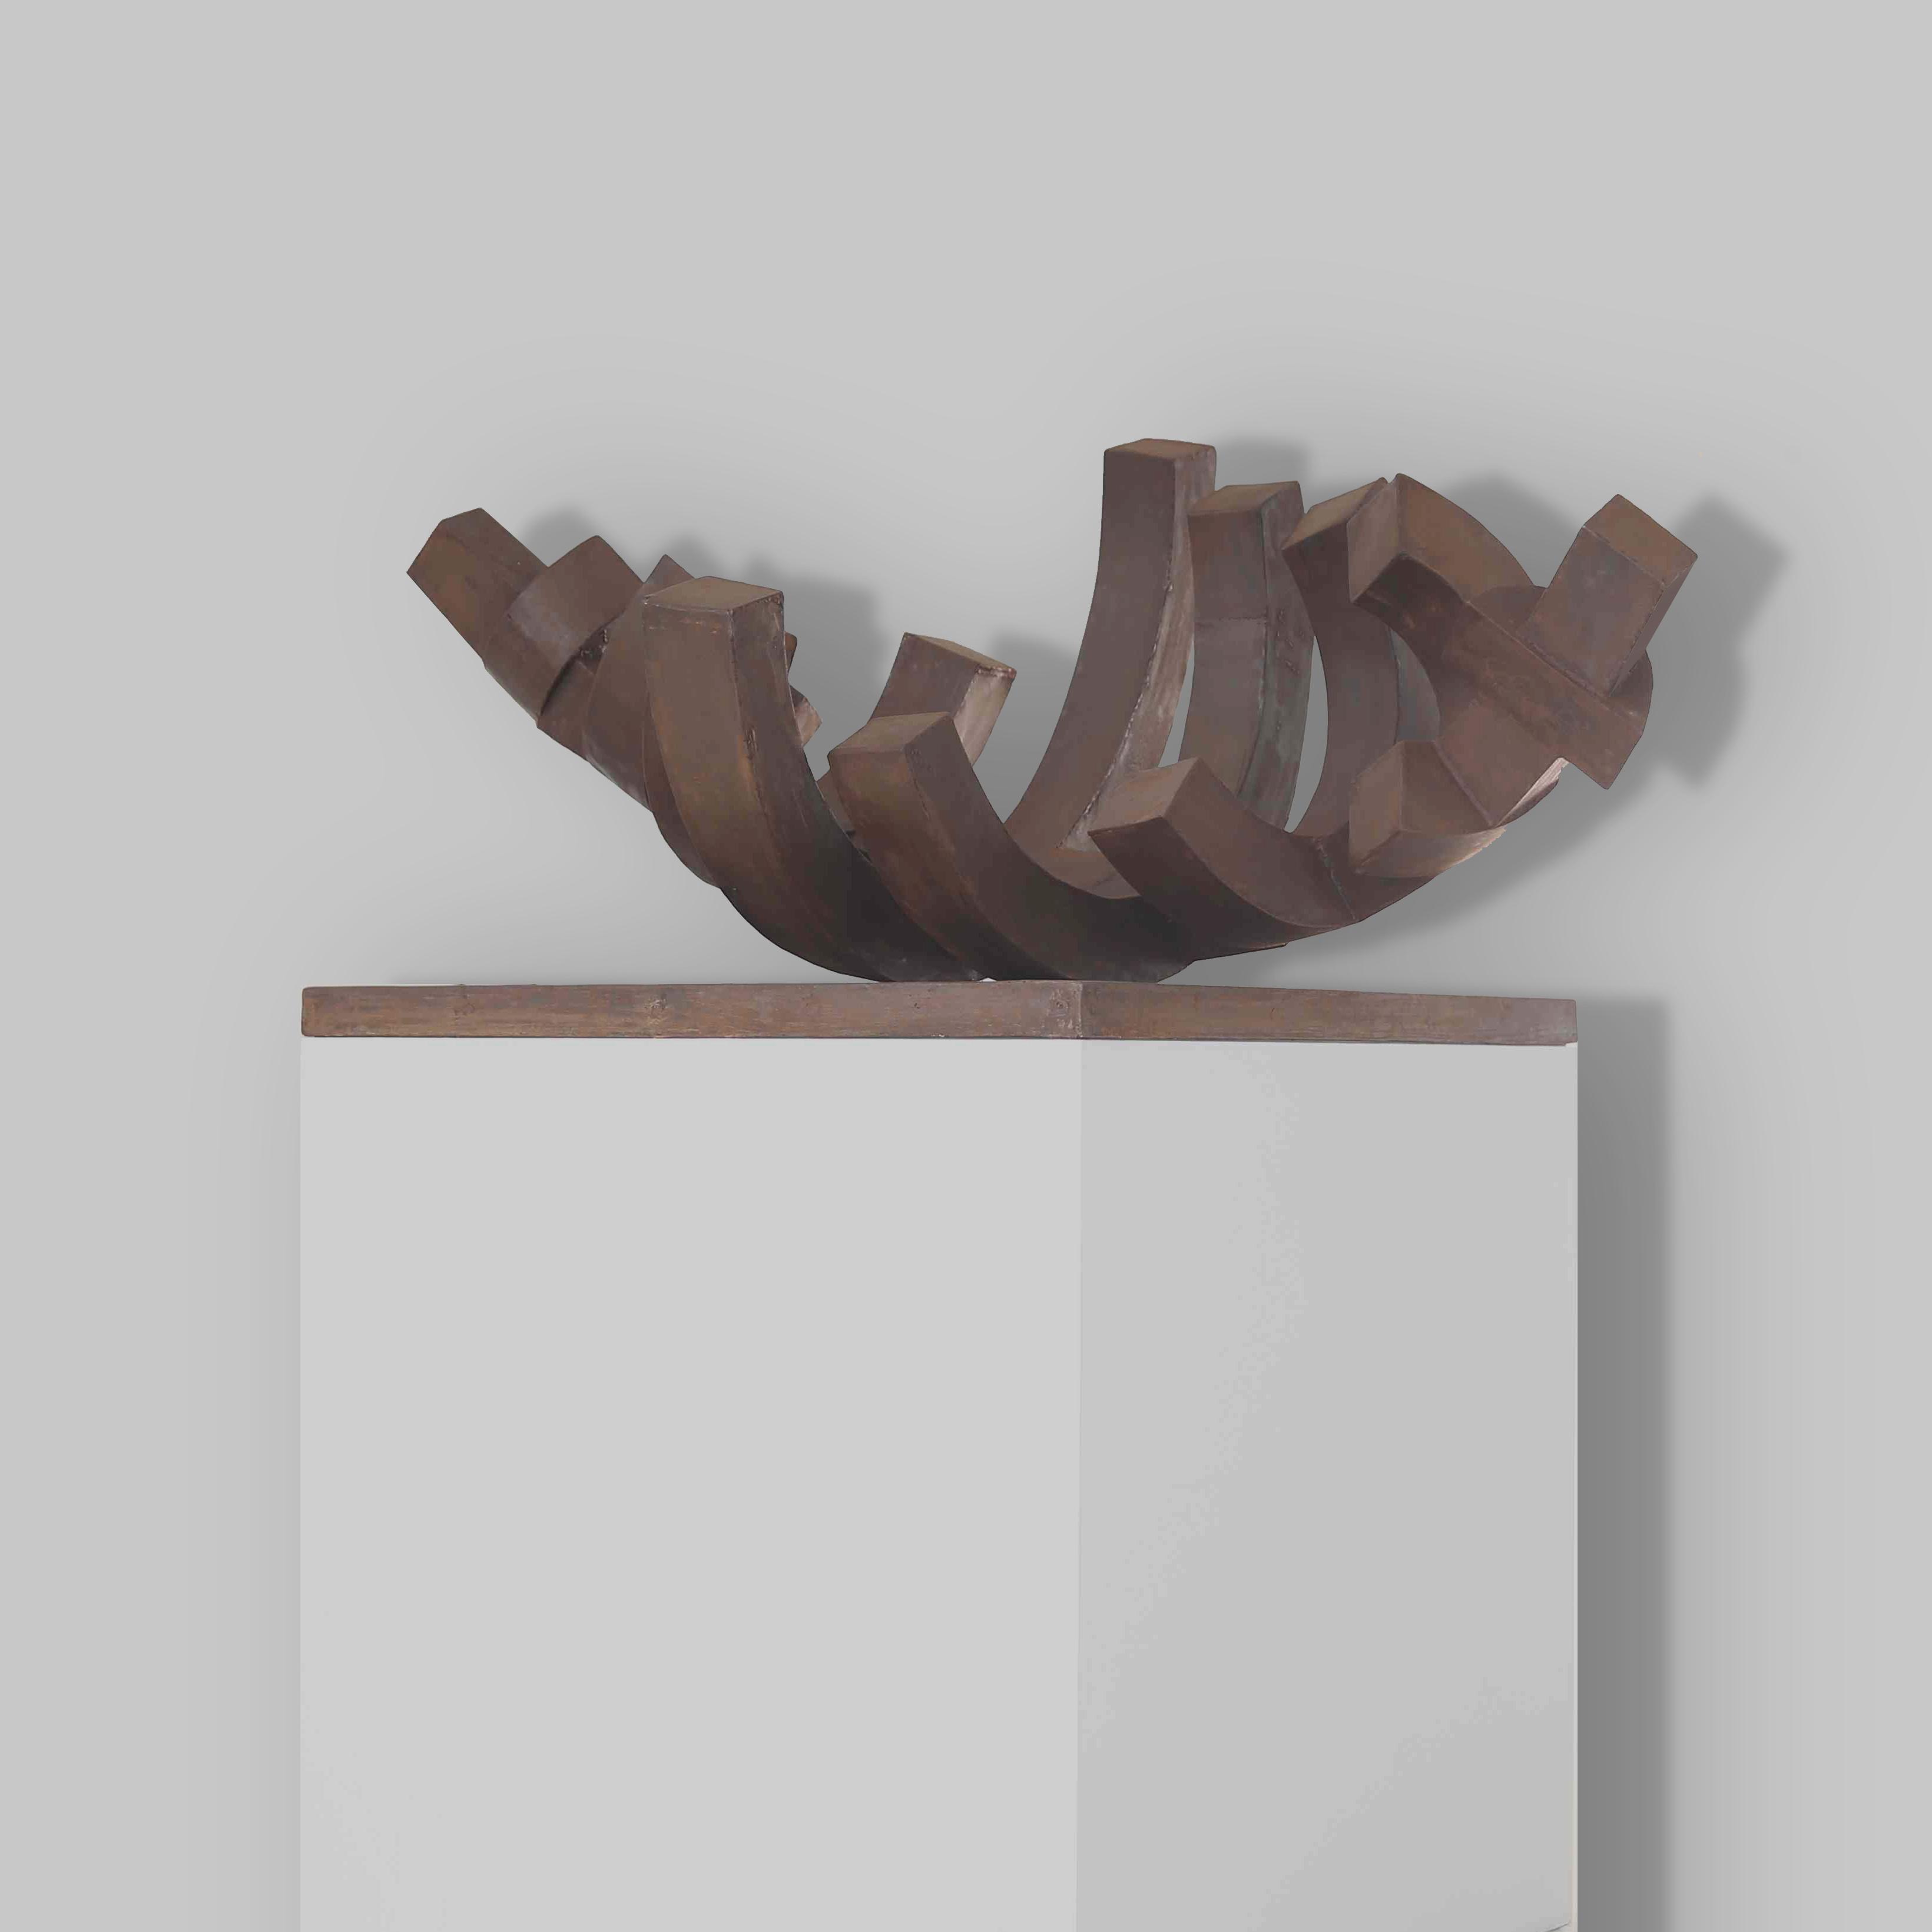 S8. 2014
Sculpture acier.
72 x 160 x 100 cm